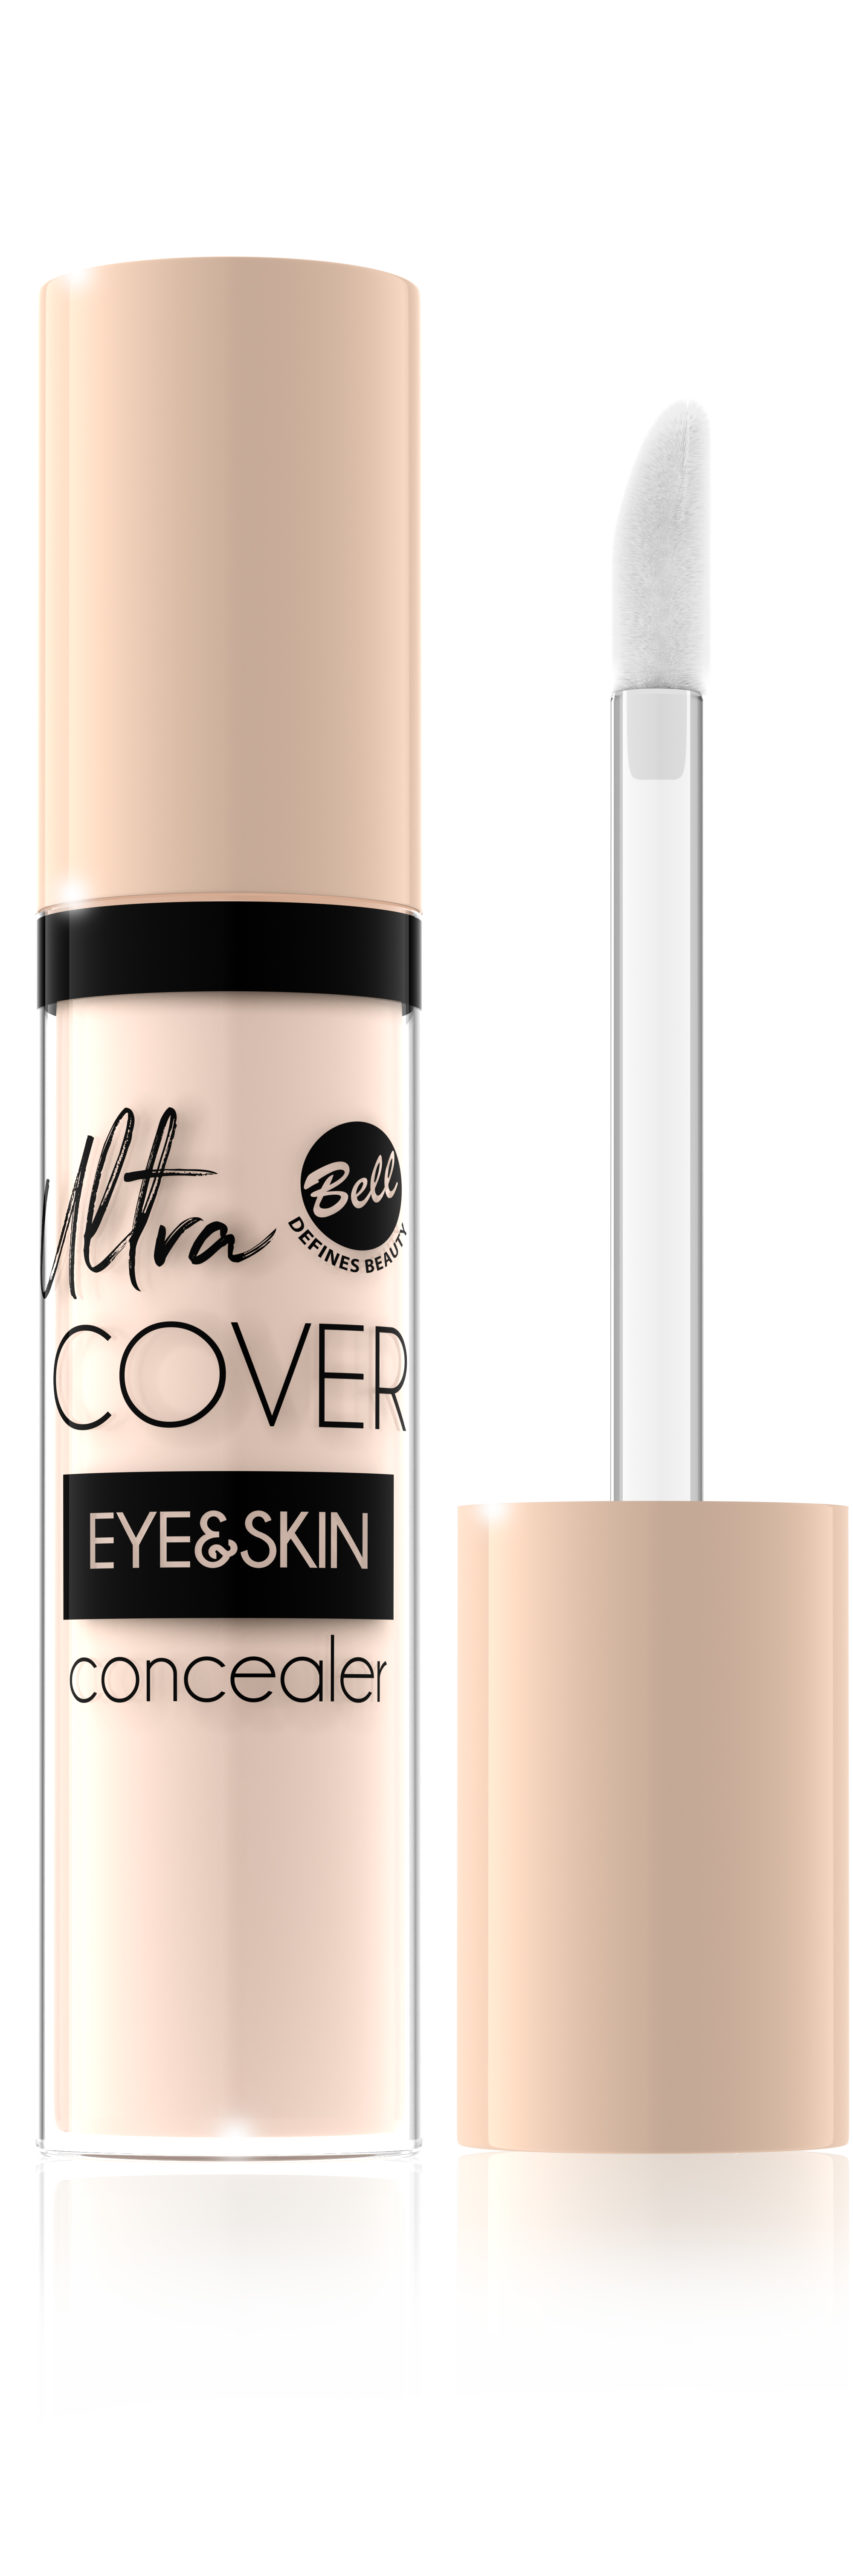 Ultra Cover Eye&Skin Concealer